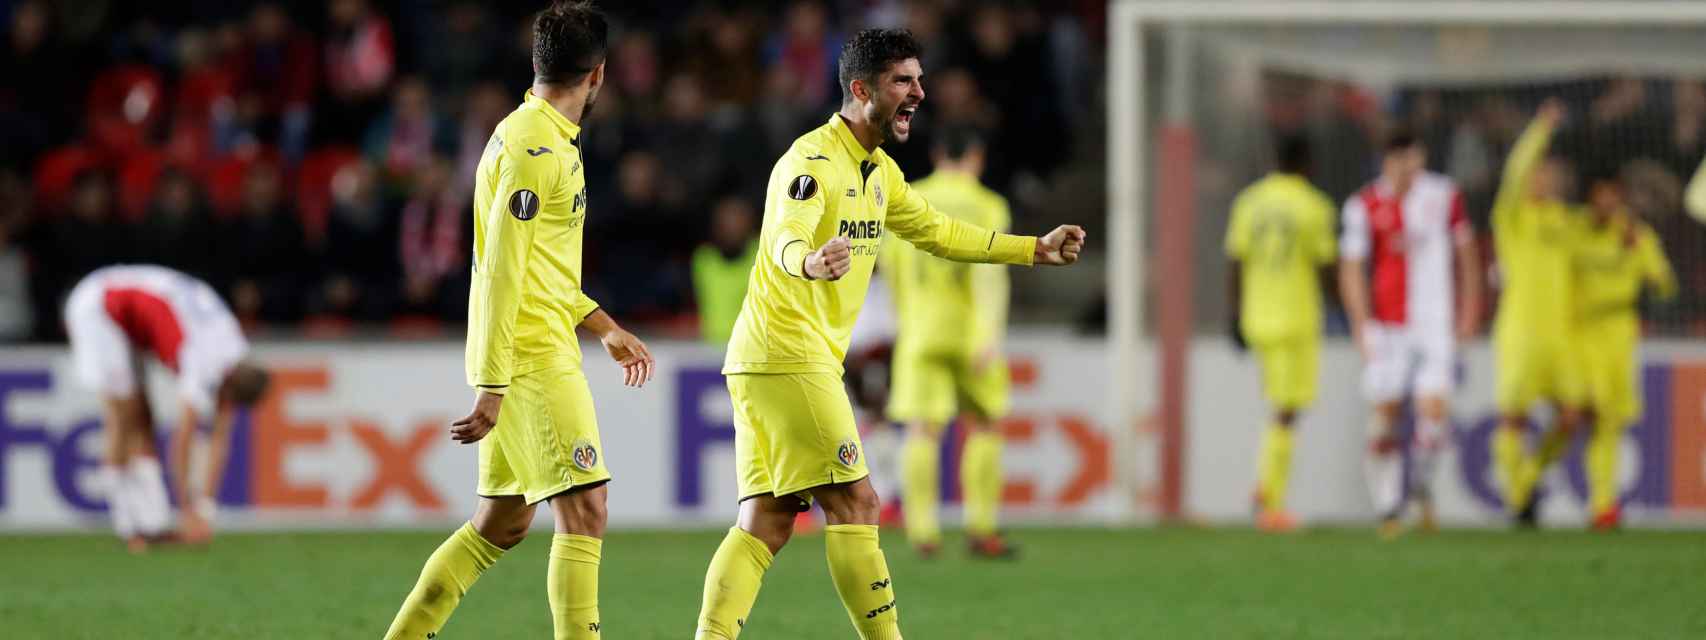 El Villarreal logró este jueves un meritorio triunfo en Praga, donde se impuso al Slavia por 0-2, que le permite auparse al liderato del Grupo A de la Liga Europa y tener más cerca la clasificación para la siguiente ronda. / Reuters